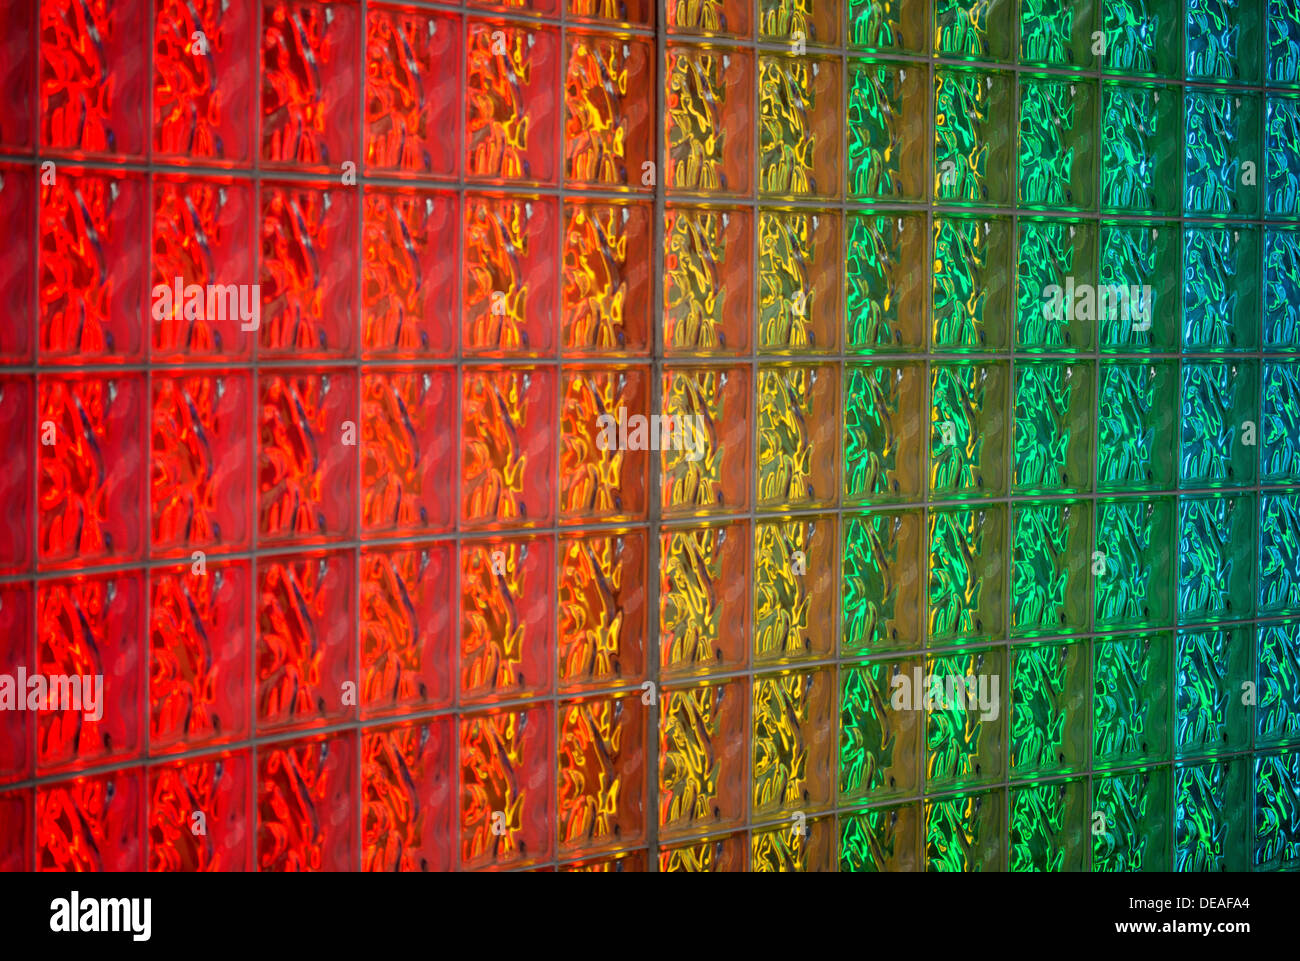 Immagini Stock - I Fili Luminosi Dell'arcobaleno Astraggono Il Fondo Ai  Rendono. Image 208787280